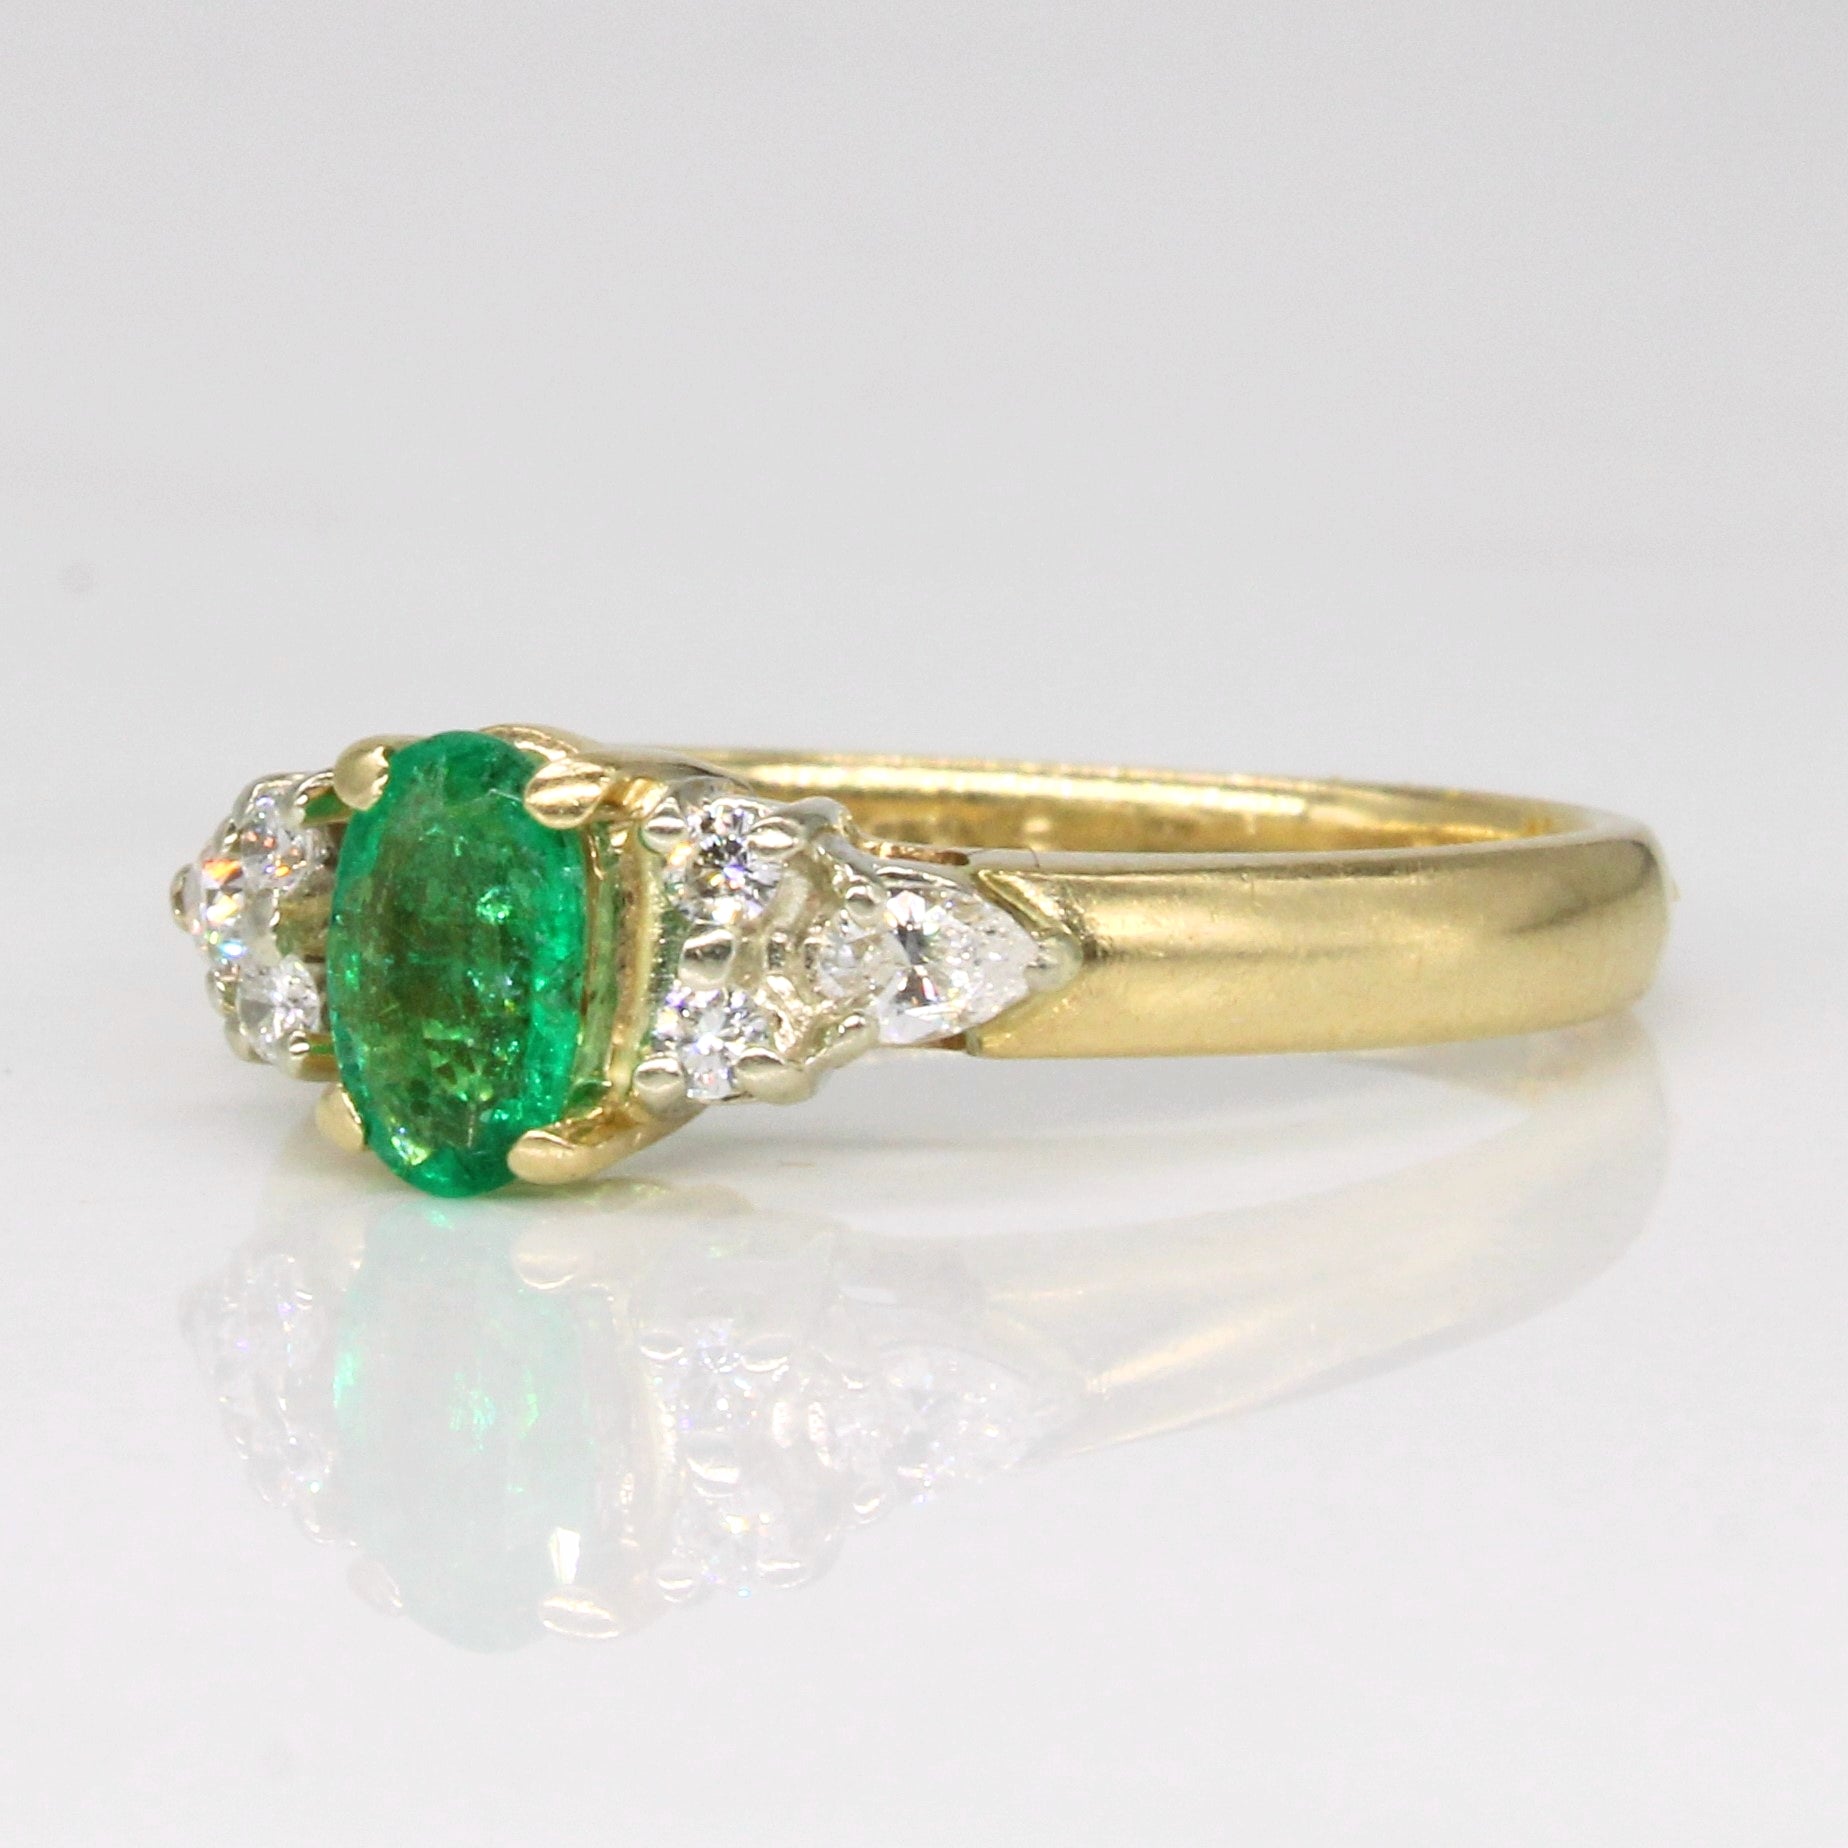 Emerald & Diamond Ring | 0.30ct, 0.21ctw | SZ 5.75 |